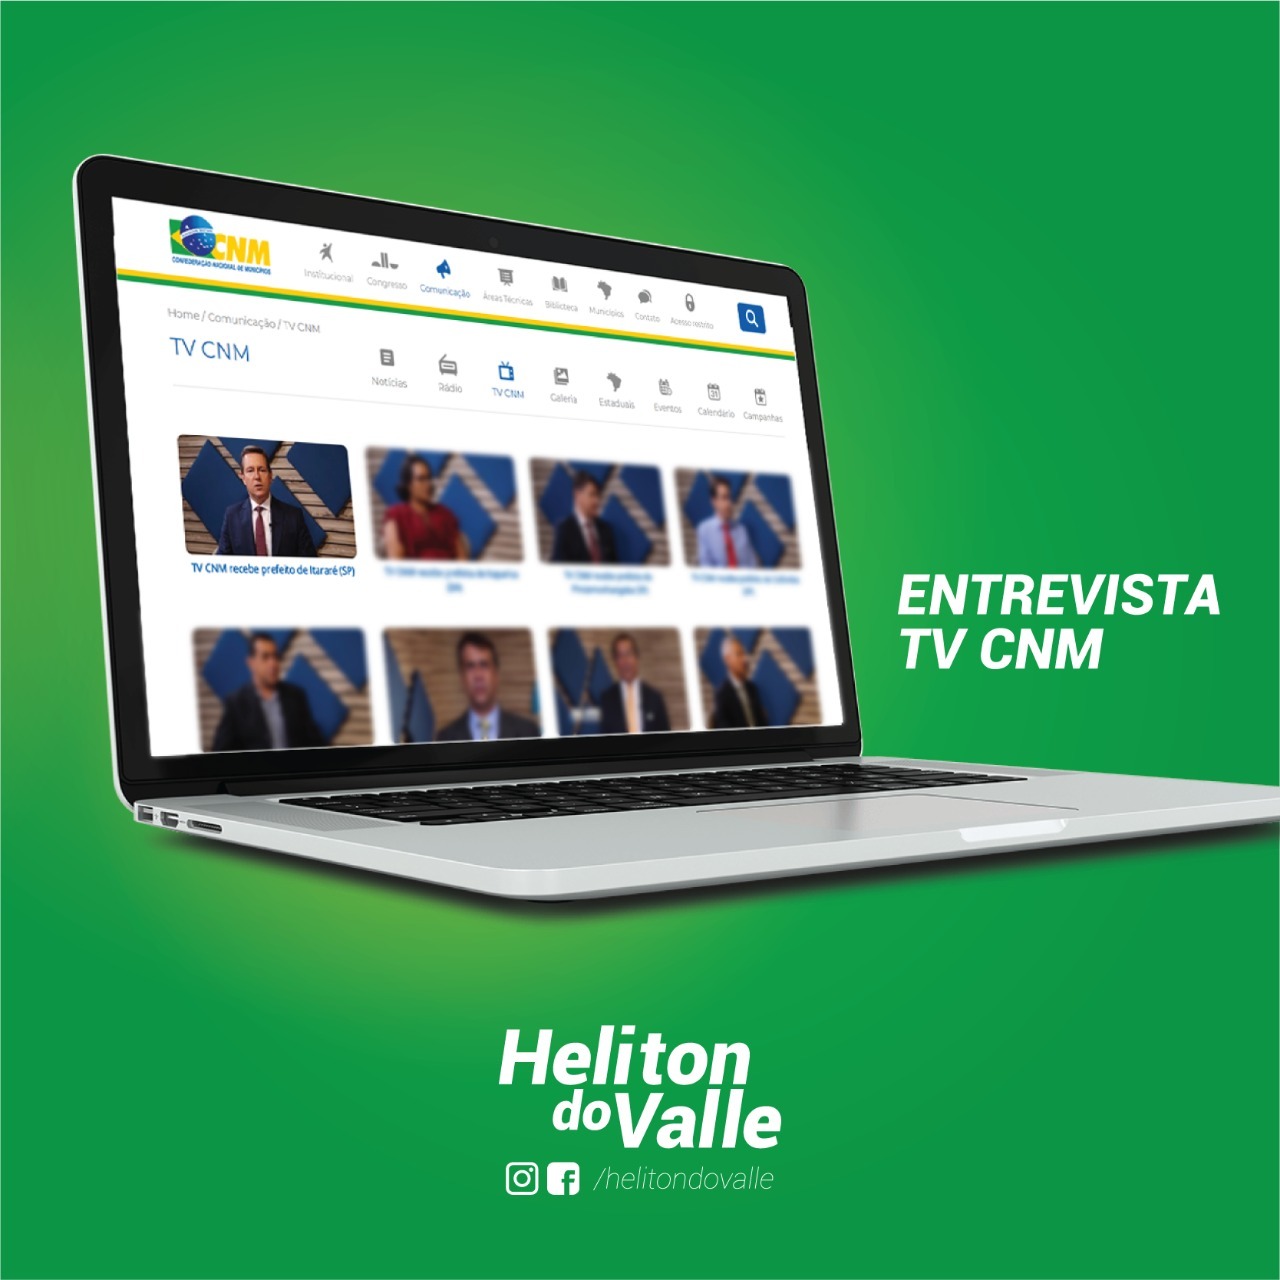 Entrevista concedida pelo prefeito de Itararé (SP), Heliton do Valle, à CNM é destaque no site da instituição